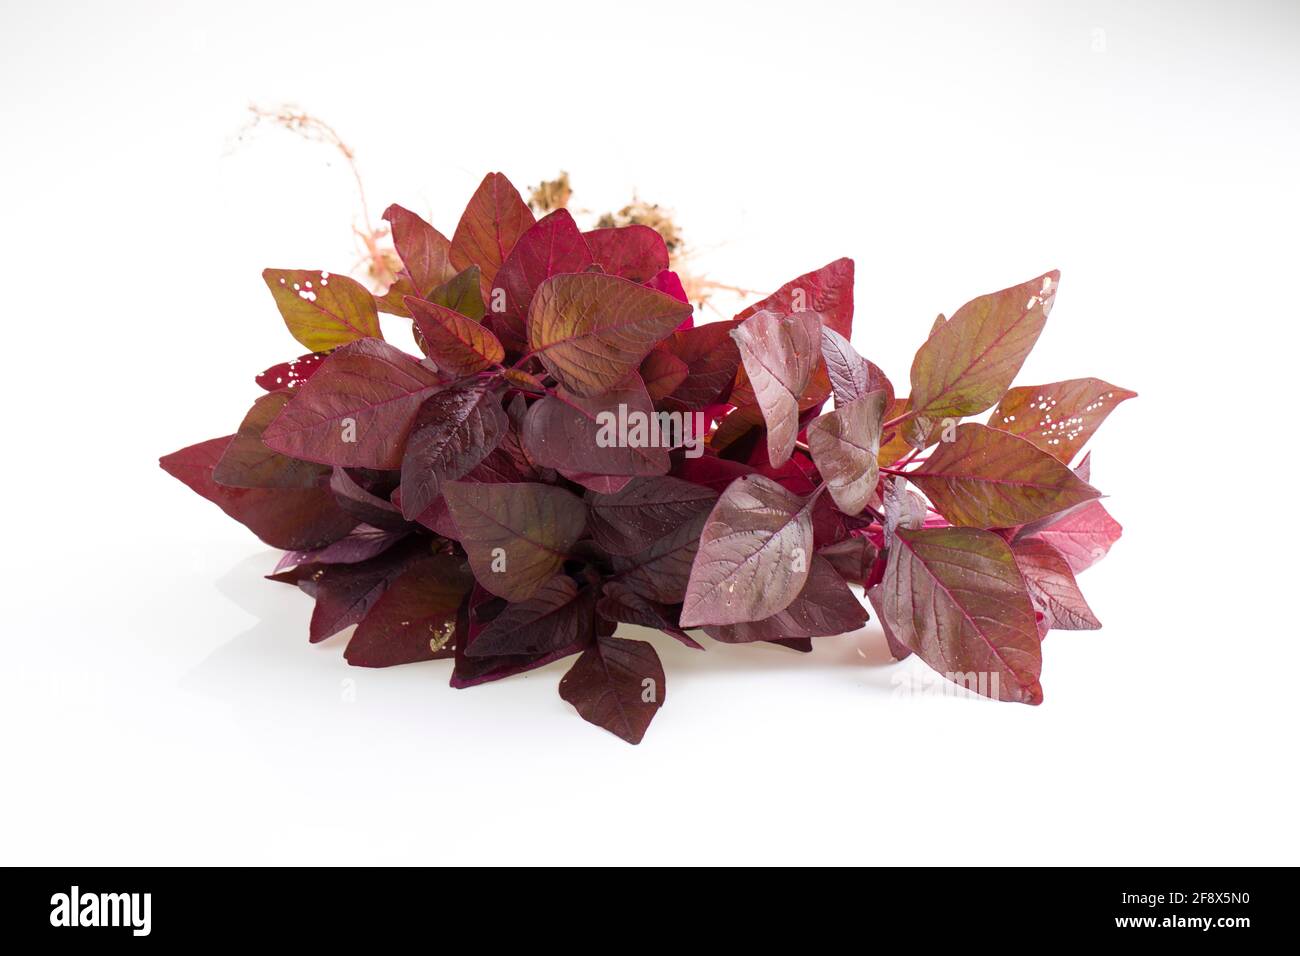 Spinach rouge ou Amaranth rouge, un bouquet d'amaranthus frais de ferme disposés sur un fond de clolus blanc Banque D'Images